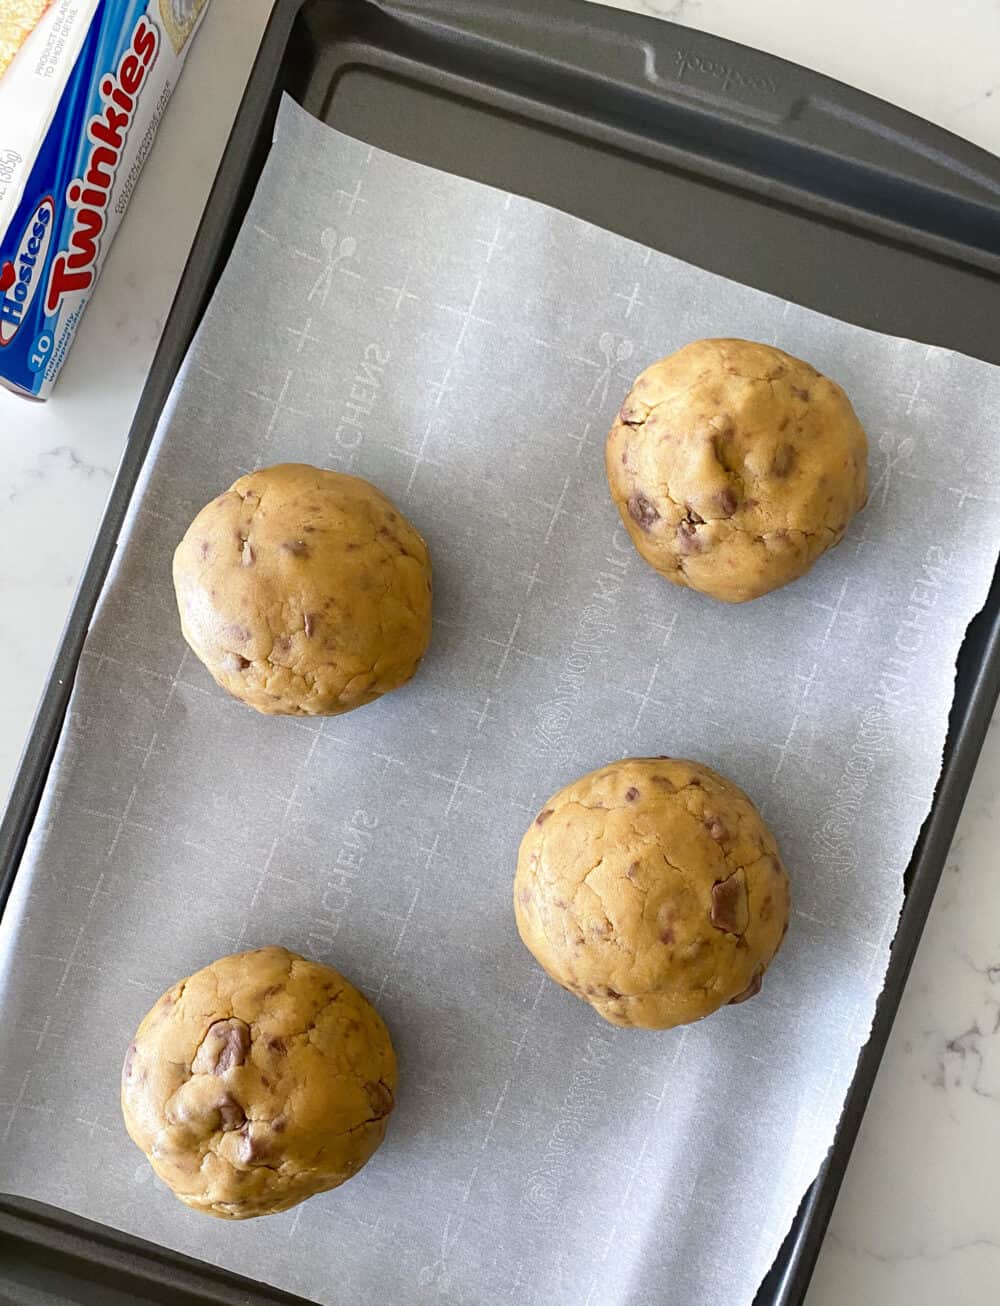 twinkie stuffed cookie dough on baking sheet